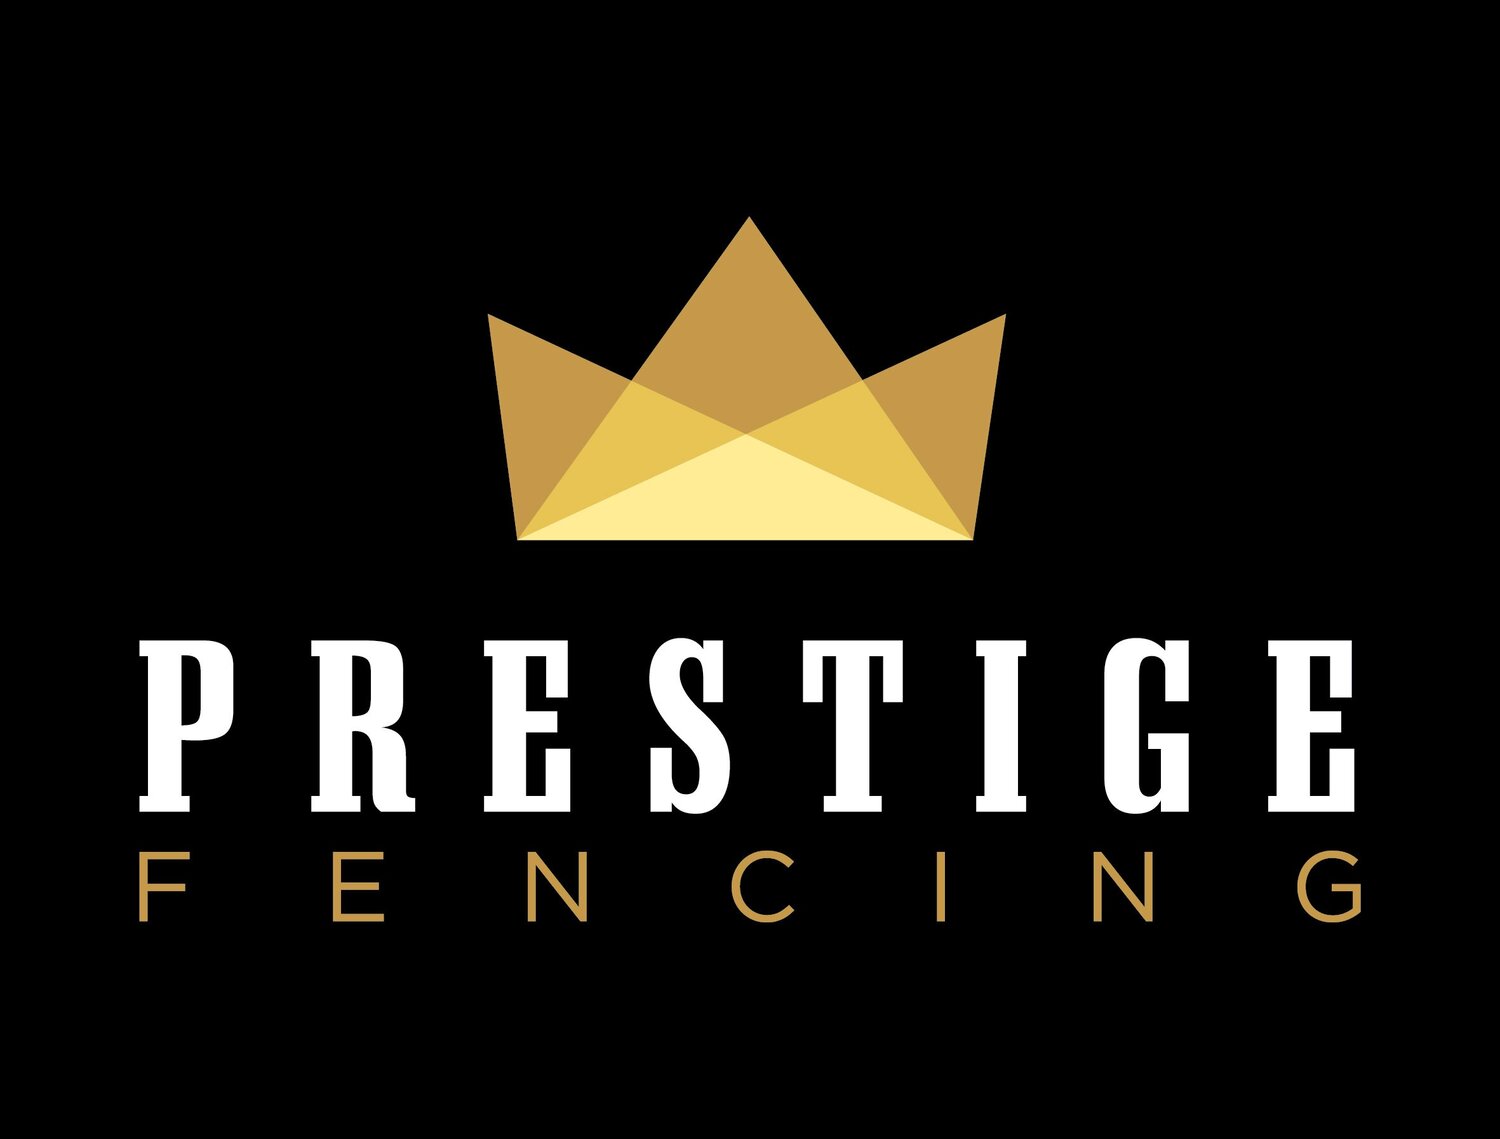 Prestige Fencing